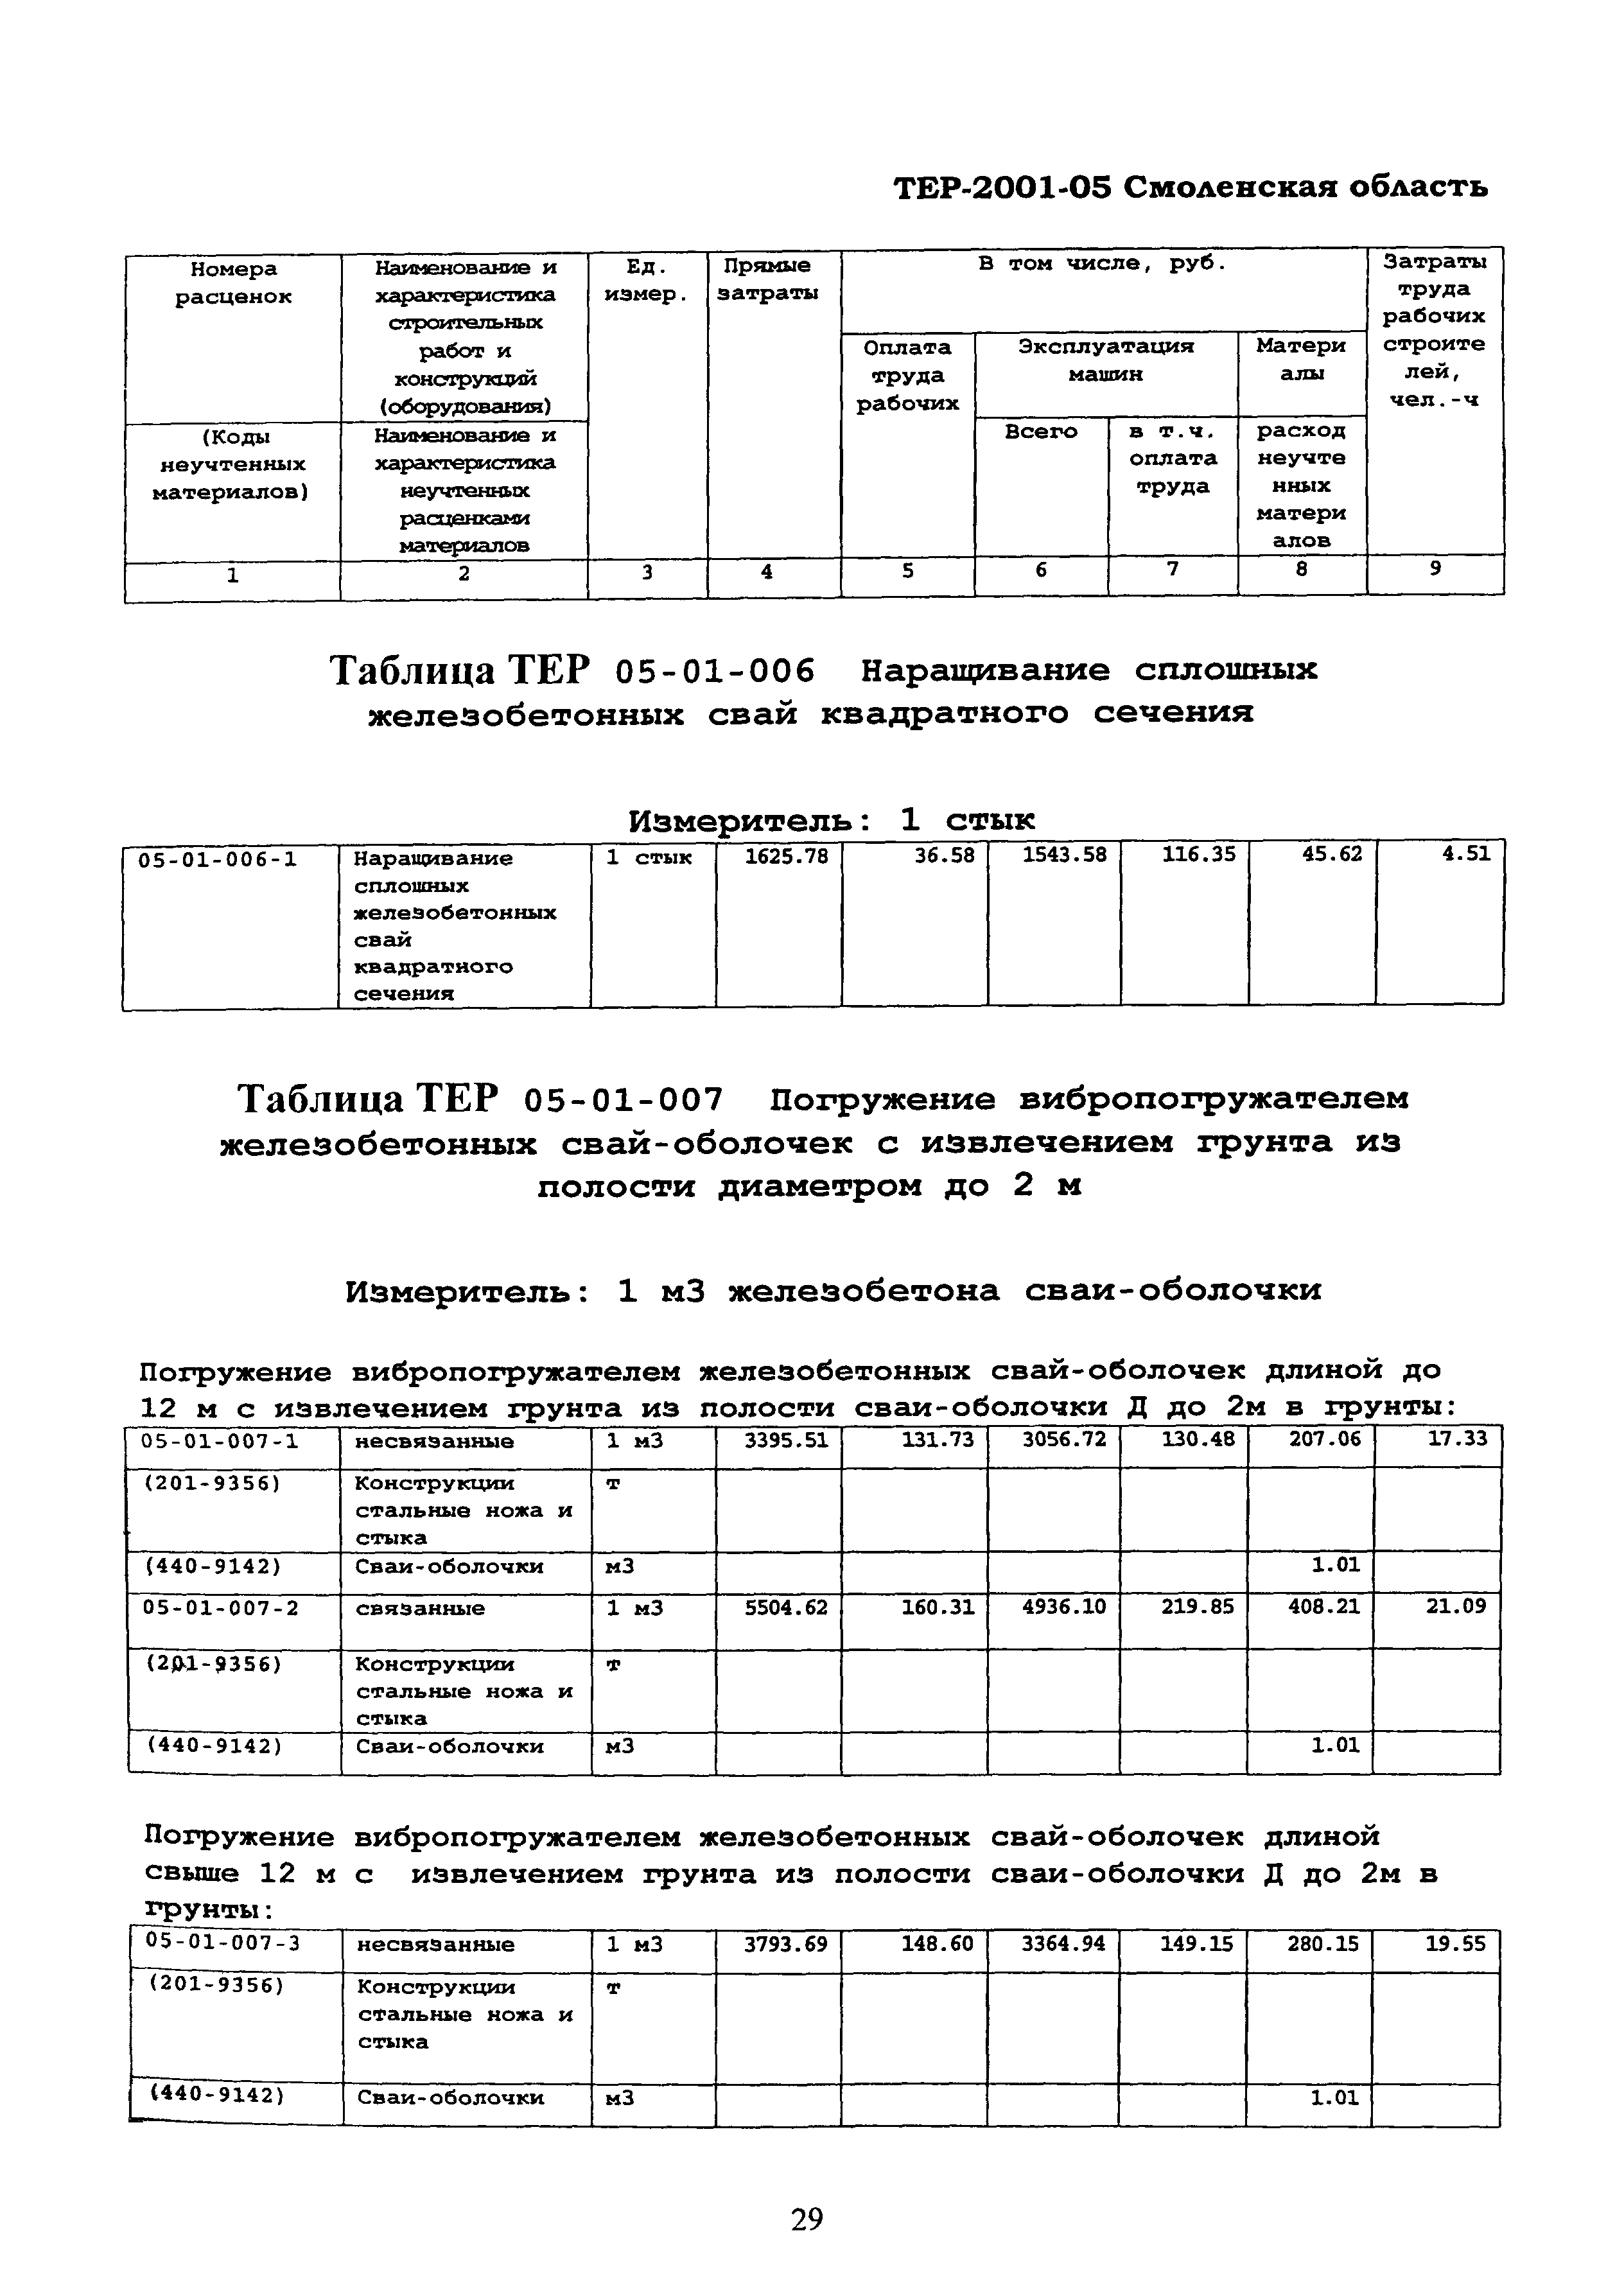 ТЕР Смоленской обл. 2001-05